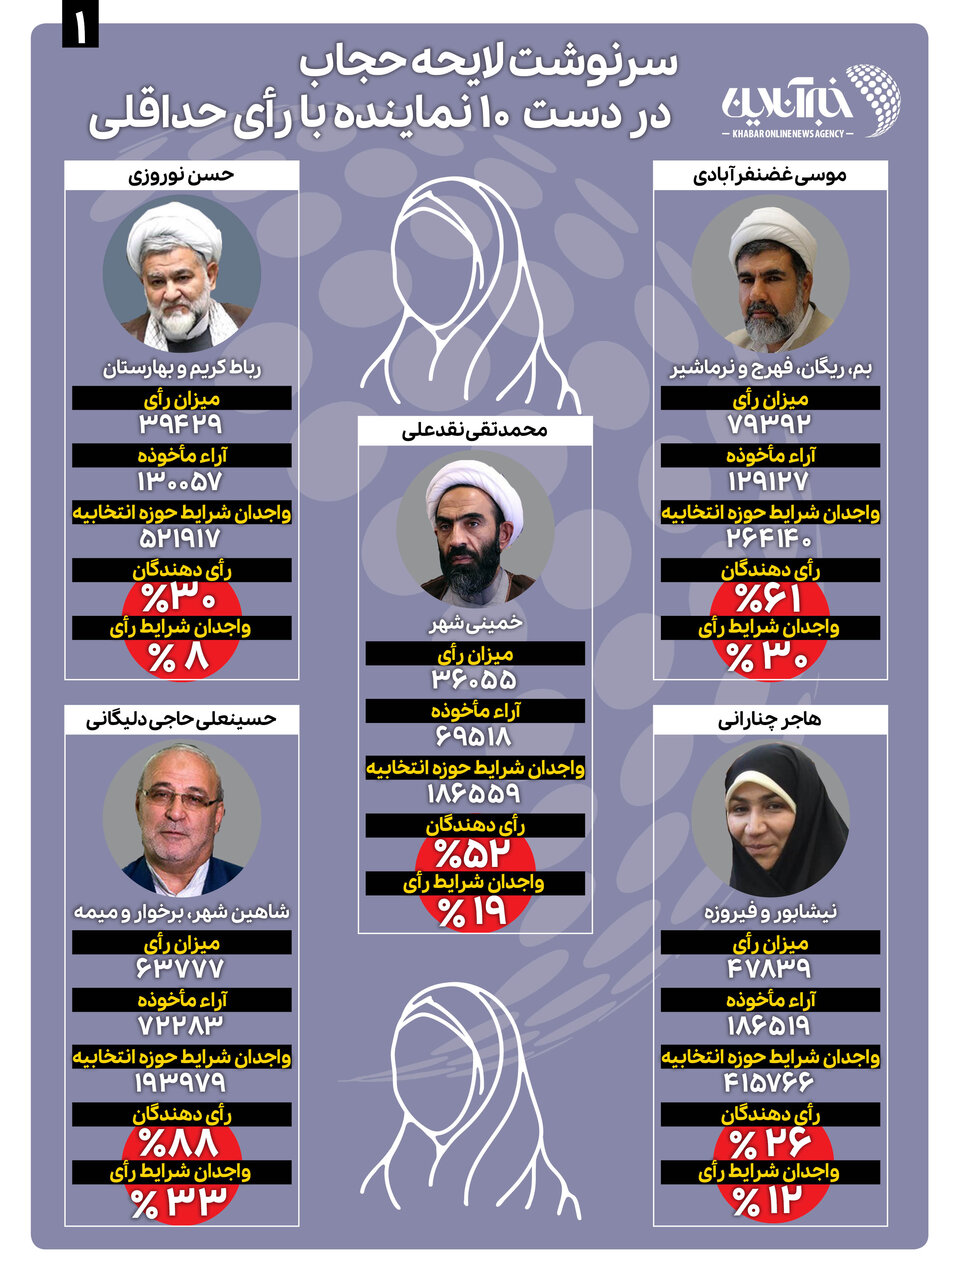 ۱۰ نماینده با مجموع ۴۹۲ هزار رأی؛ تصویب‌کنندگان لایحه حجاب برای ۸۵ میلیون ایرانی